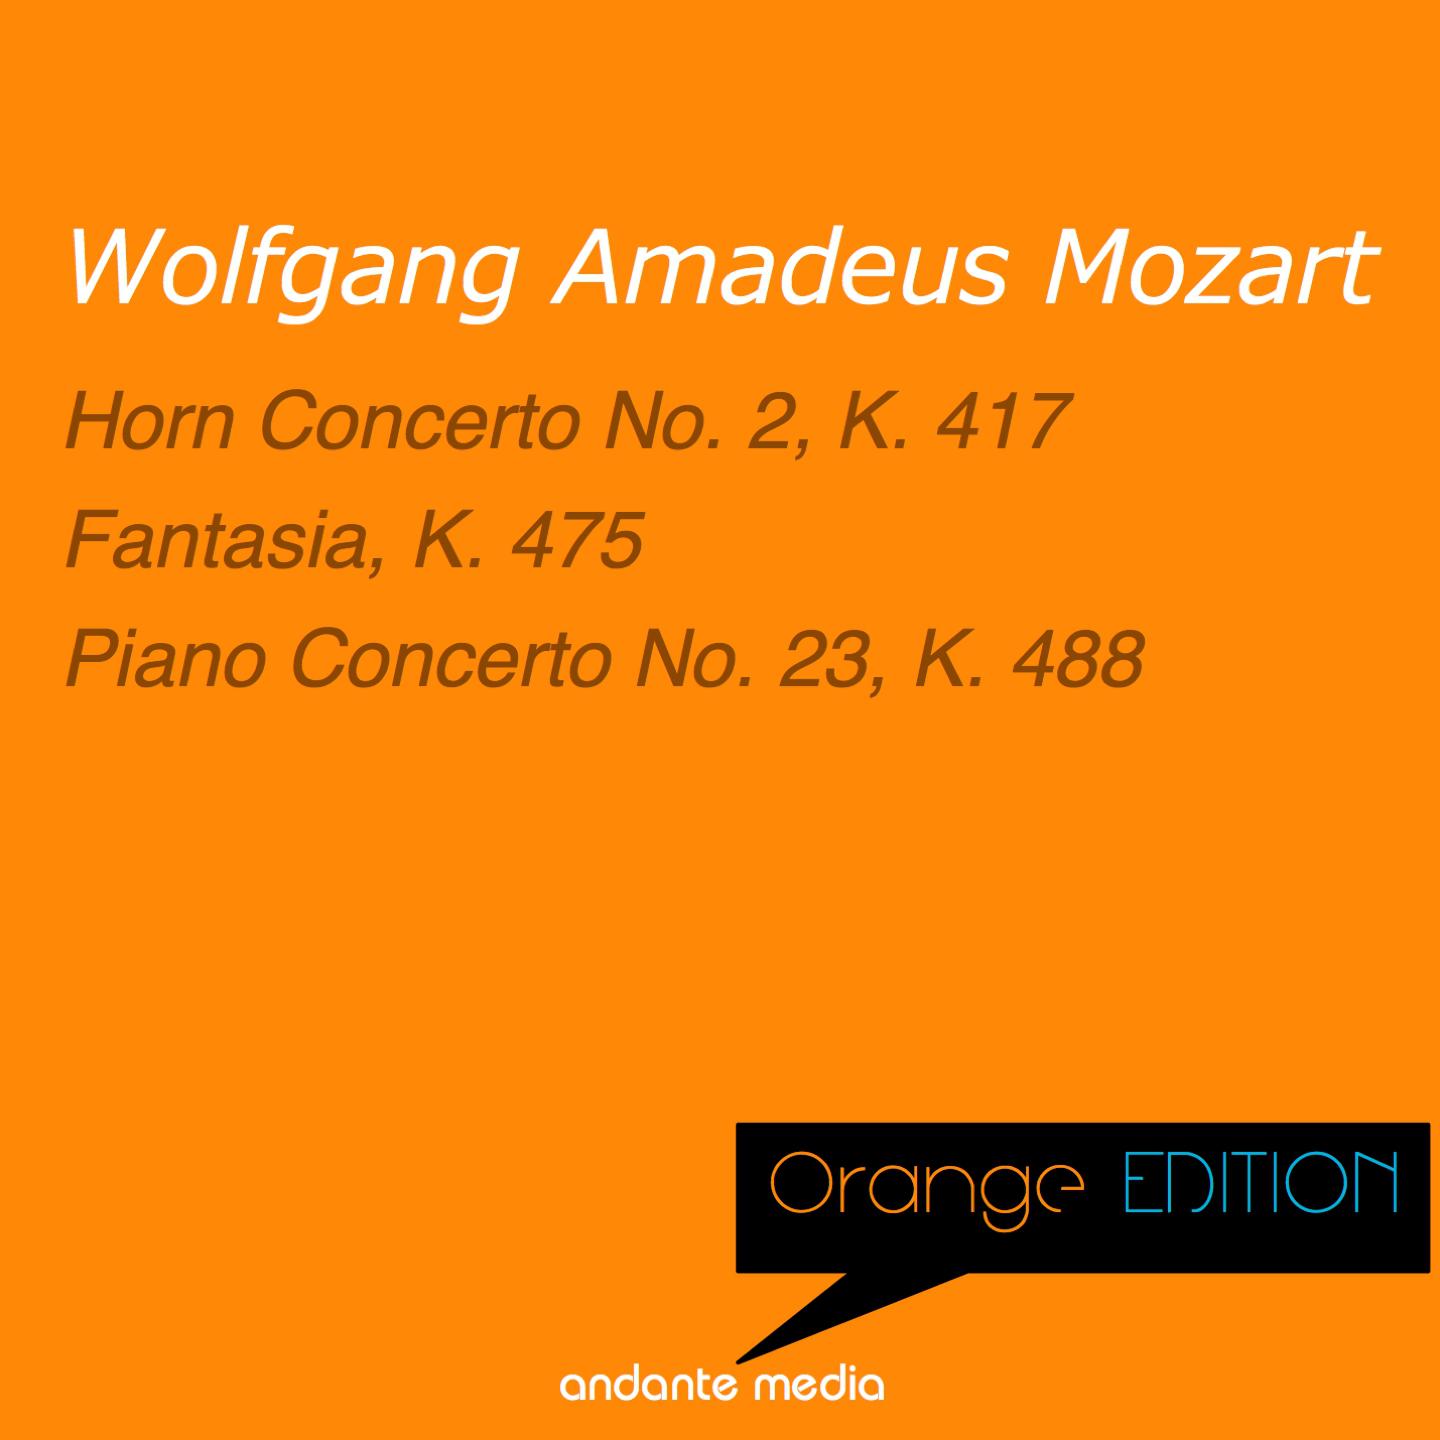 Orange Edition - Mozart: Horn Concerto No. 2, K. 417 & Piano Concerto No. 23, K. 488